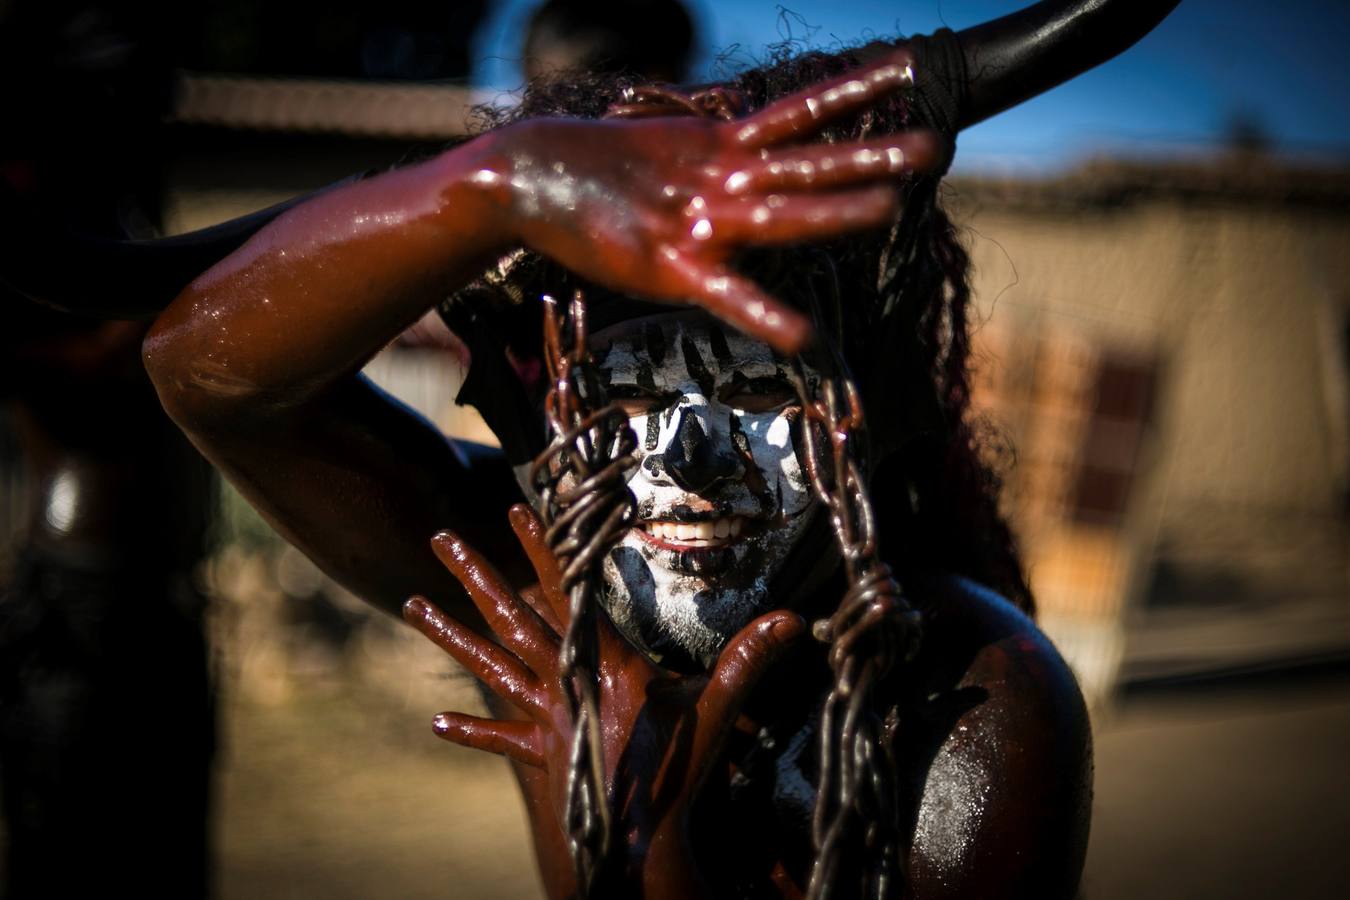 Cubiertos de aceite quemado y con máscaras de alebrijes, habitantes de la población de San Martín Tilcajete, en el estado de Oaxaca (México) celebran su tradicional carnaval, que anuncia la víspera de los festejos religiosos de la Cuaresma.